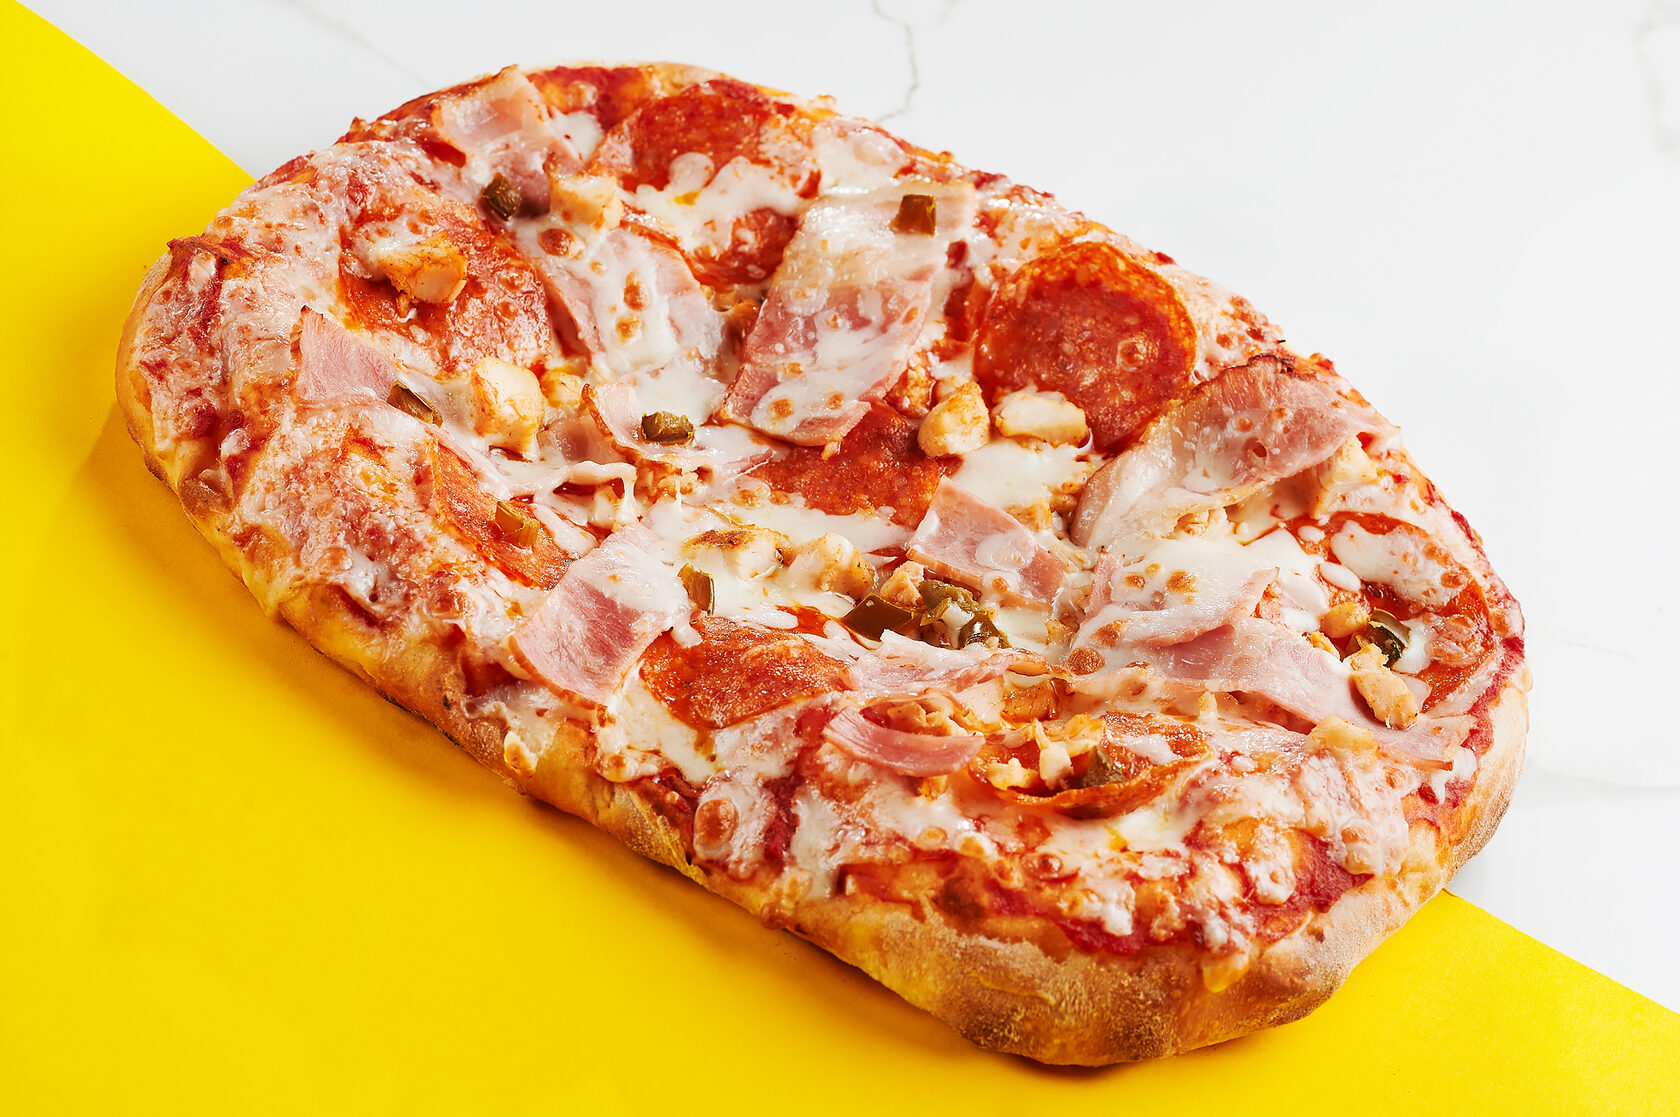 сколько калорий в одном куске пиццы пепперони додо фото 103